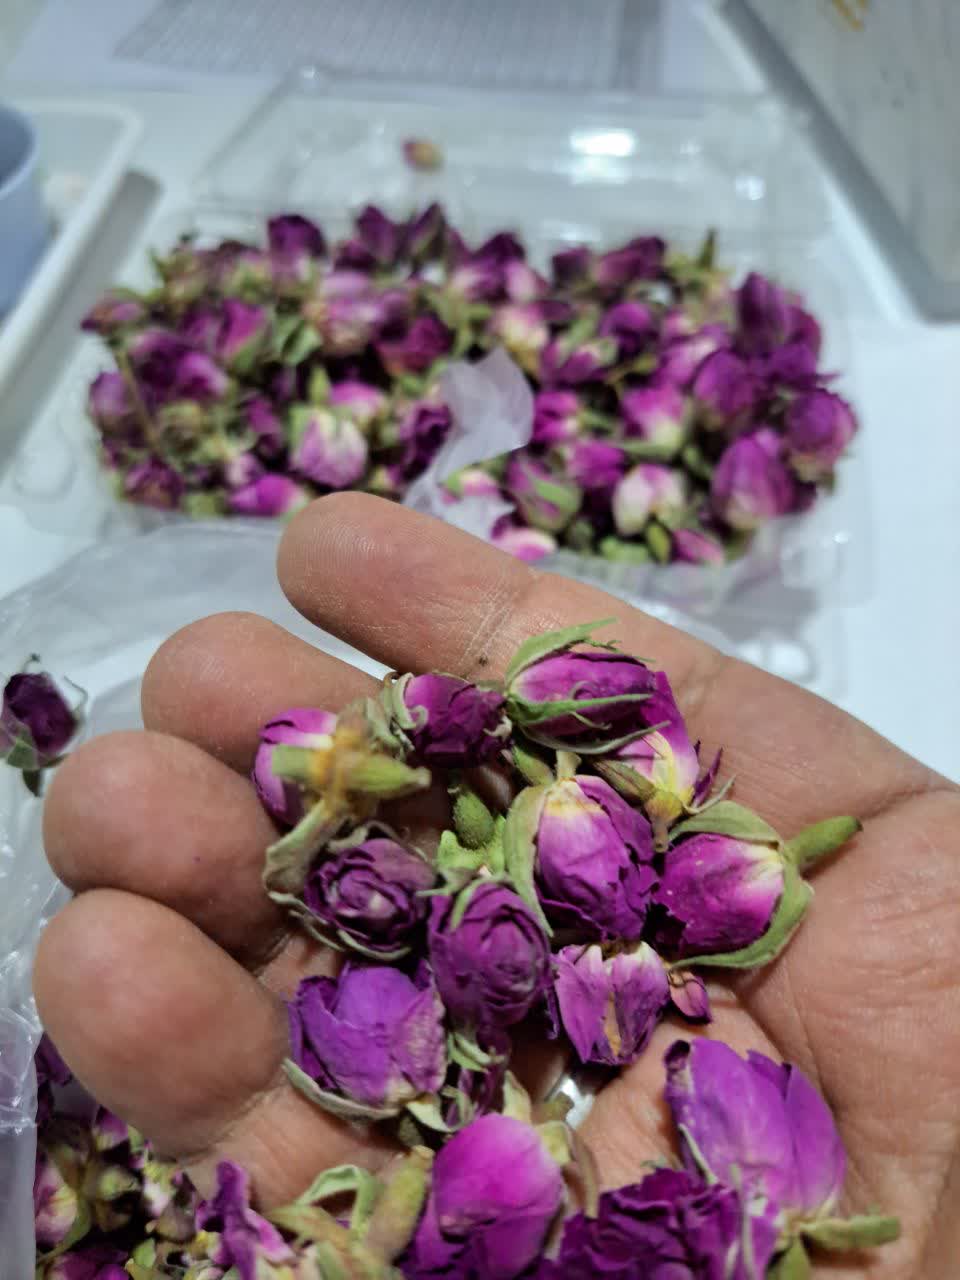 Rose Bud, Gol Mohammadi, Rose Petals